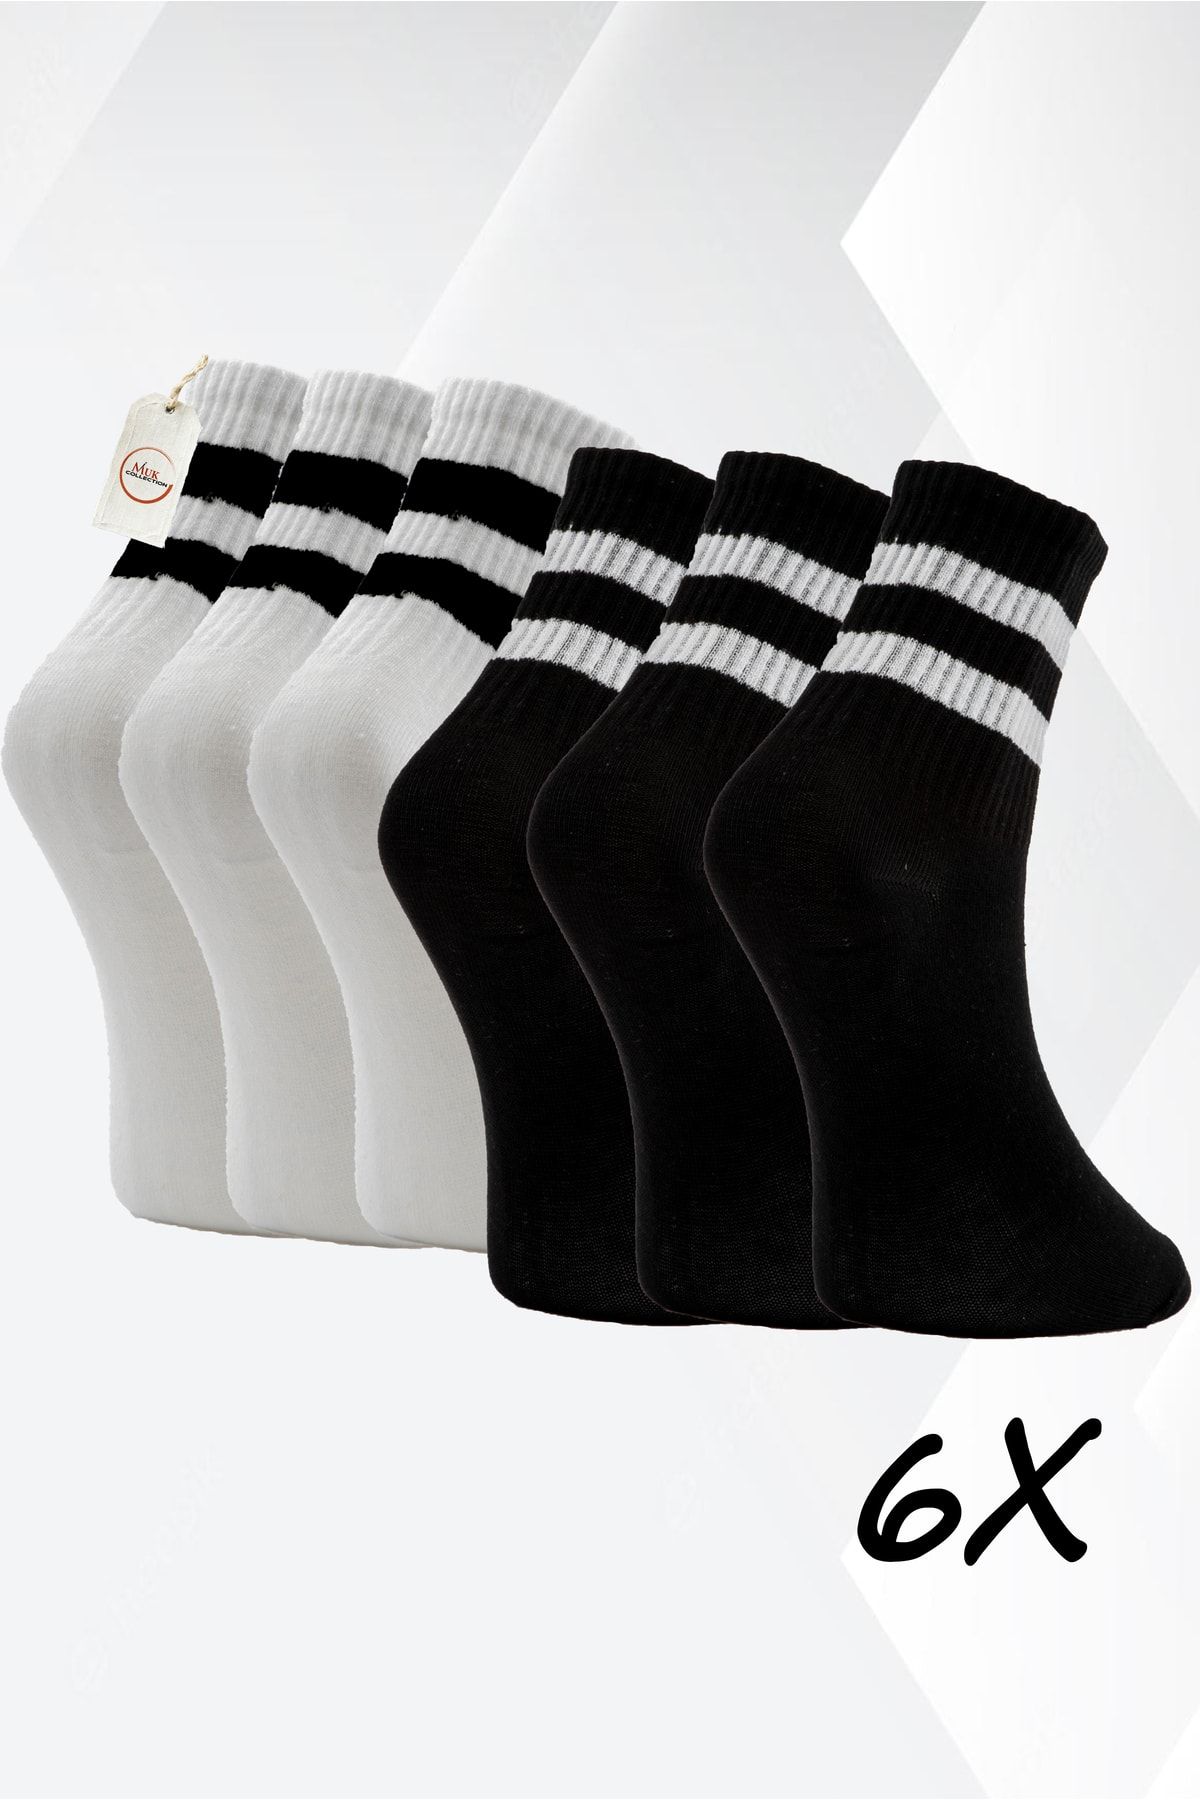 MUK COLLECTİON Konforlu Adımlar Için Siyah Ve Beyaz Renk Seçenekleriyle Premium 6'lı Tenis Çorap Seti